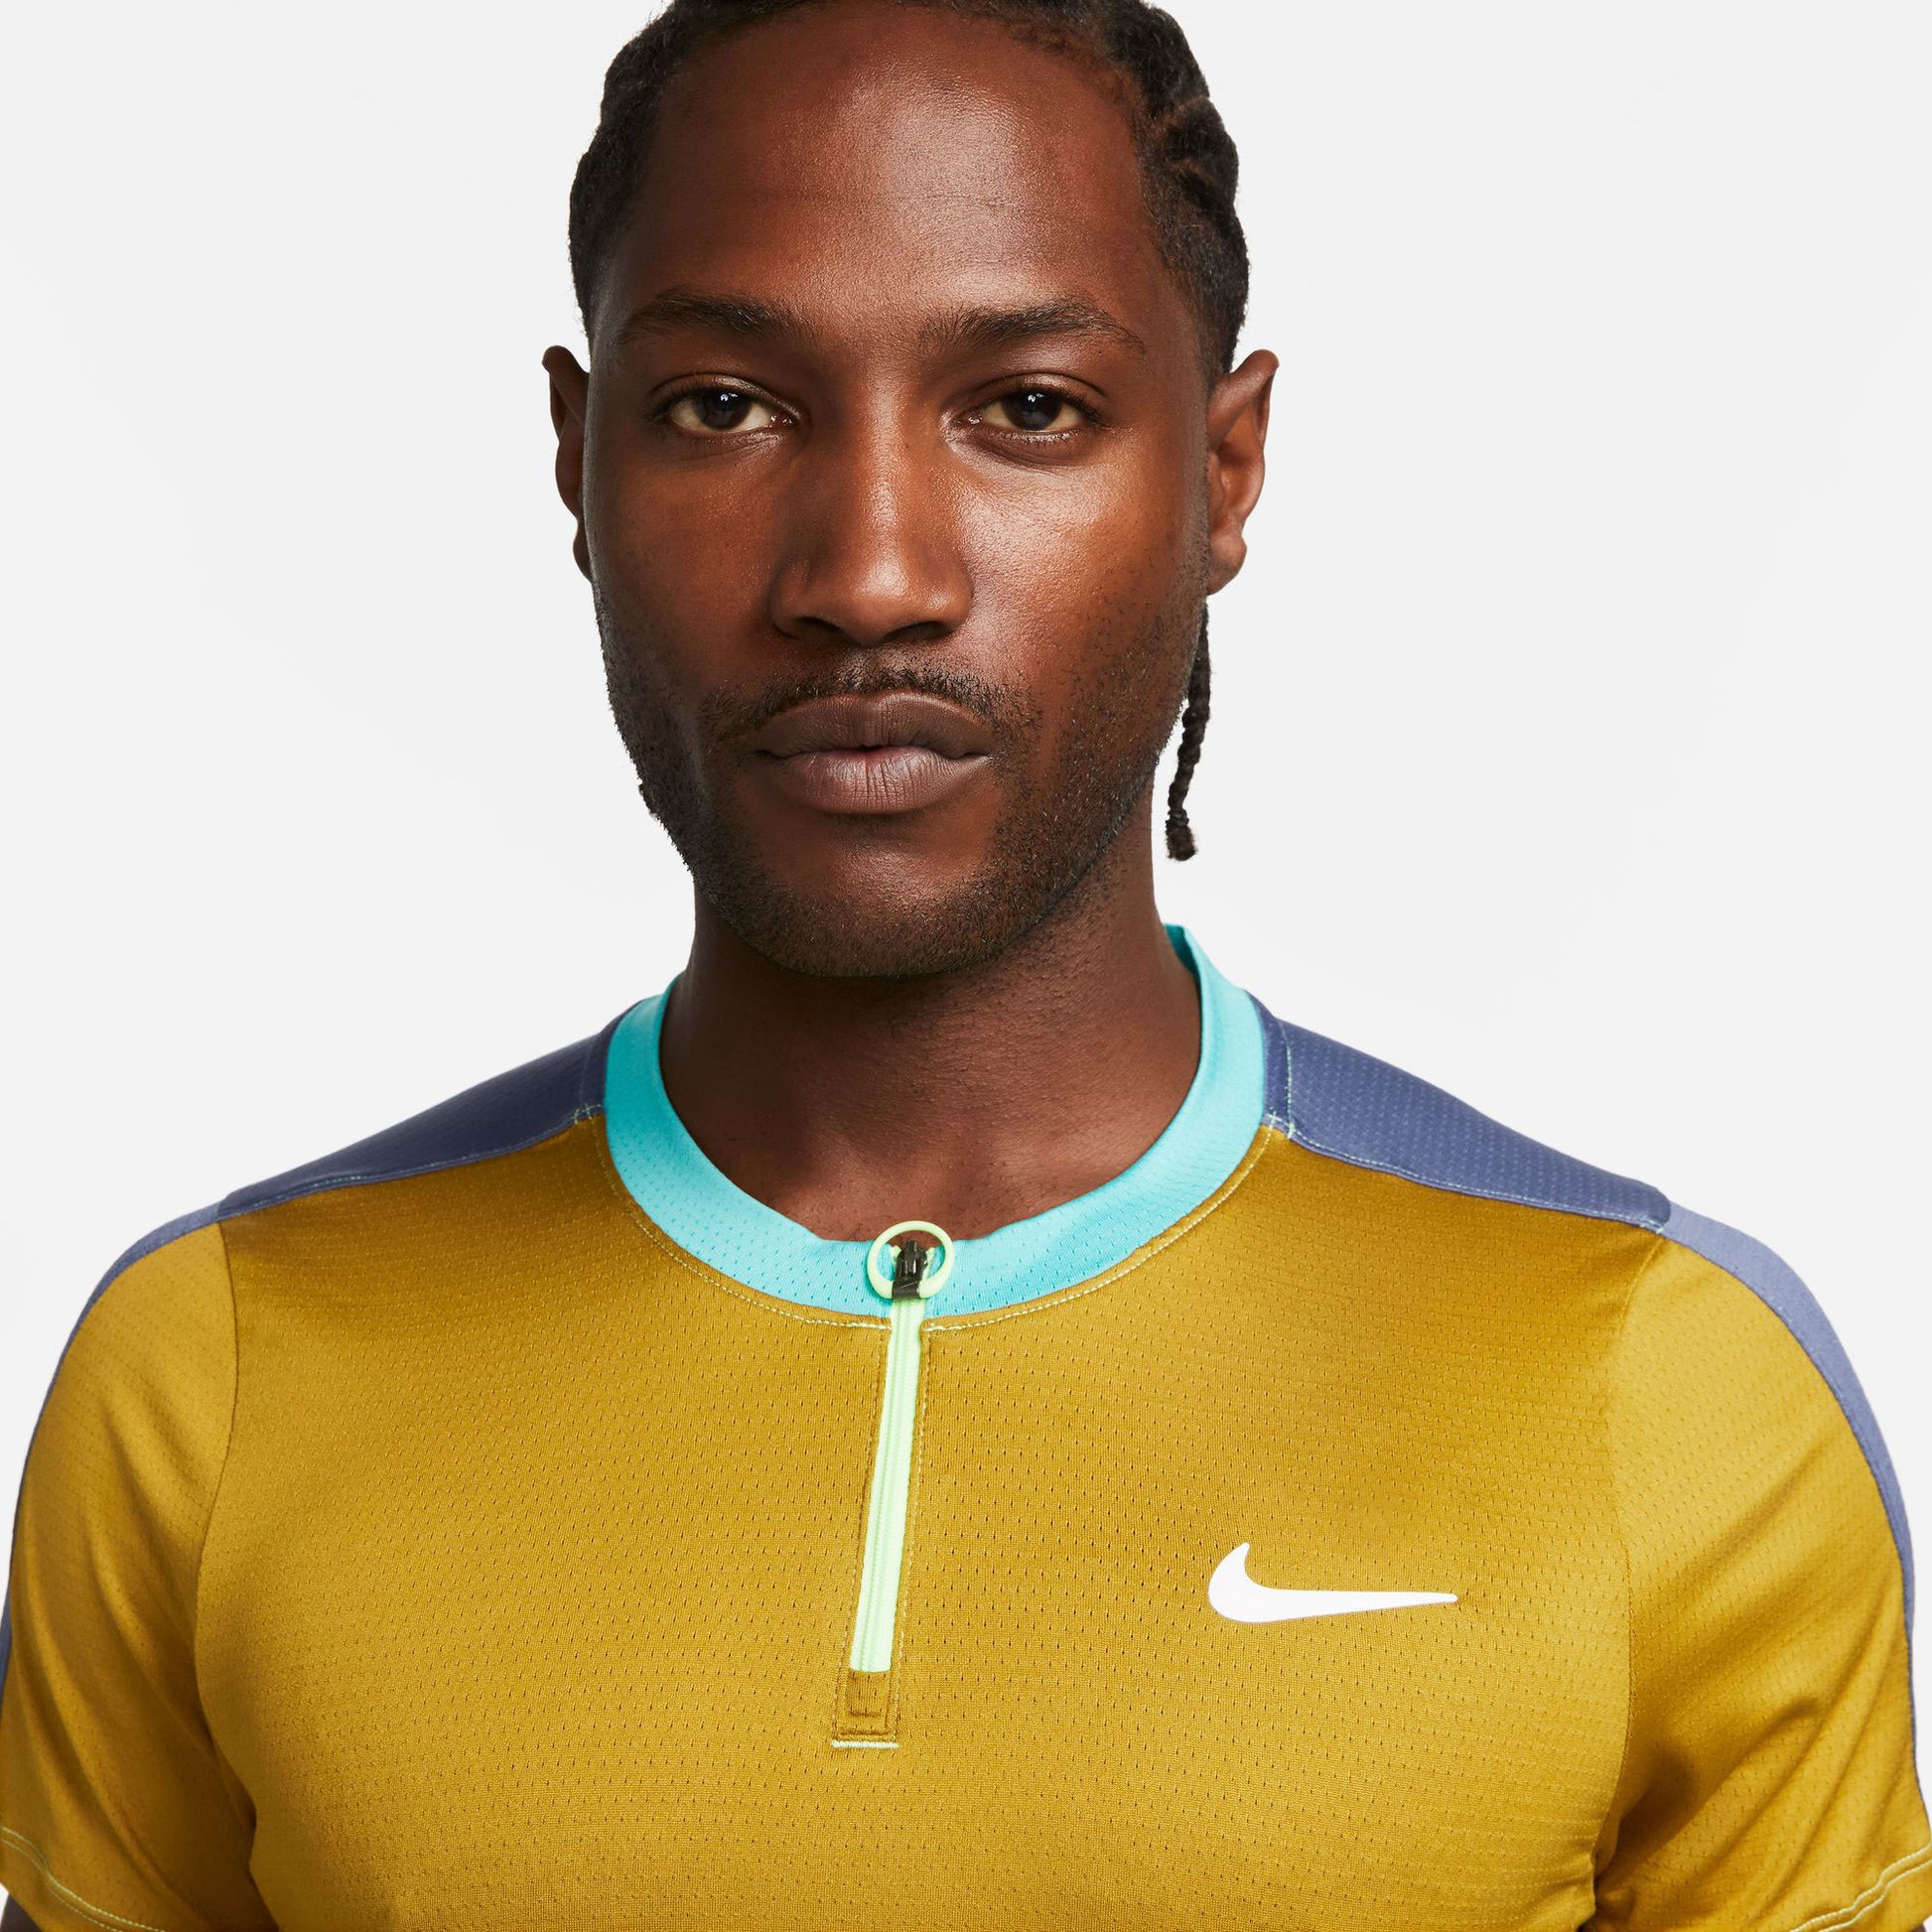 NikeCourt Dri-FIT Advantage Men's Tennis Polo White (3)